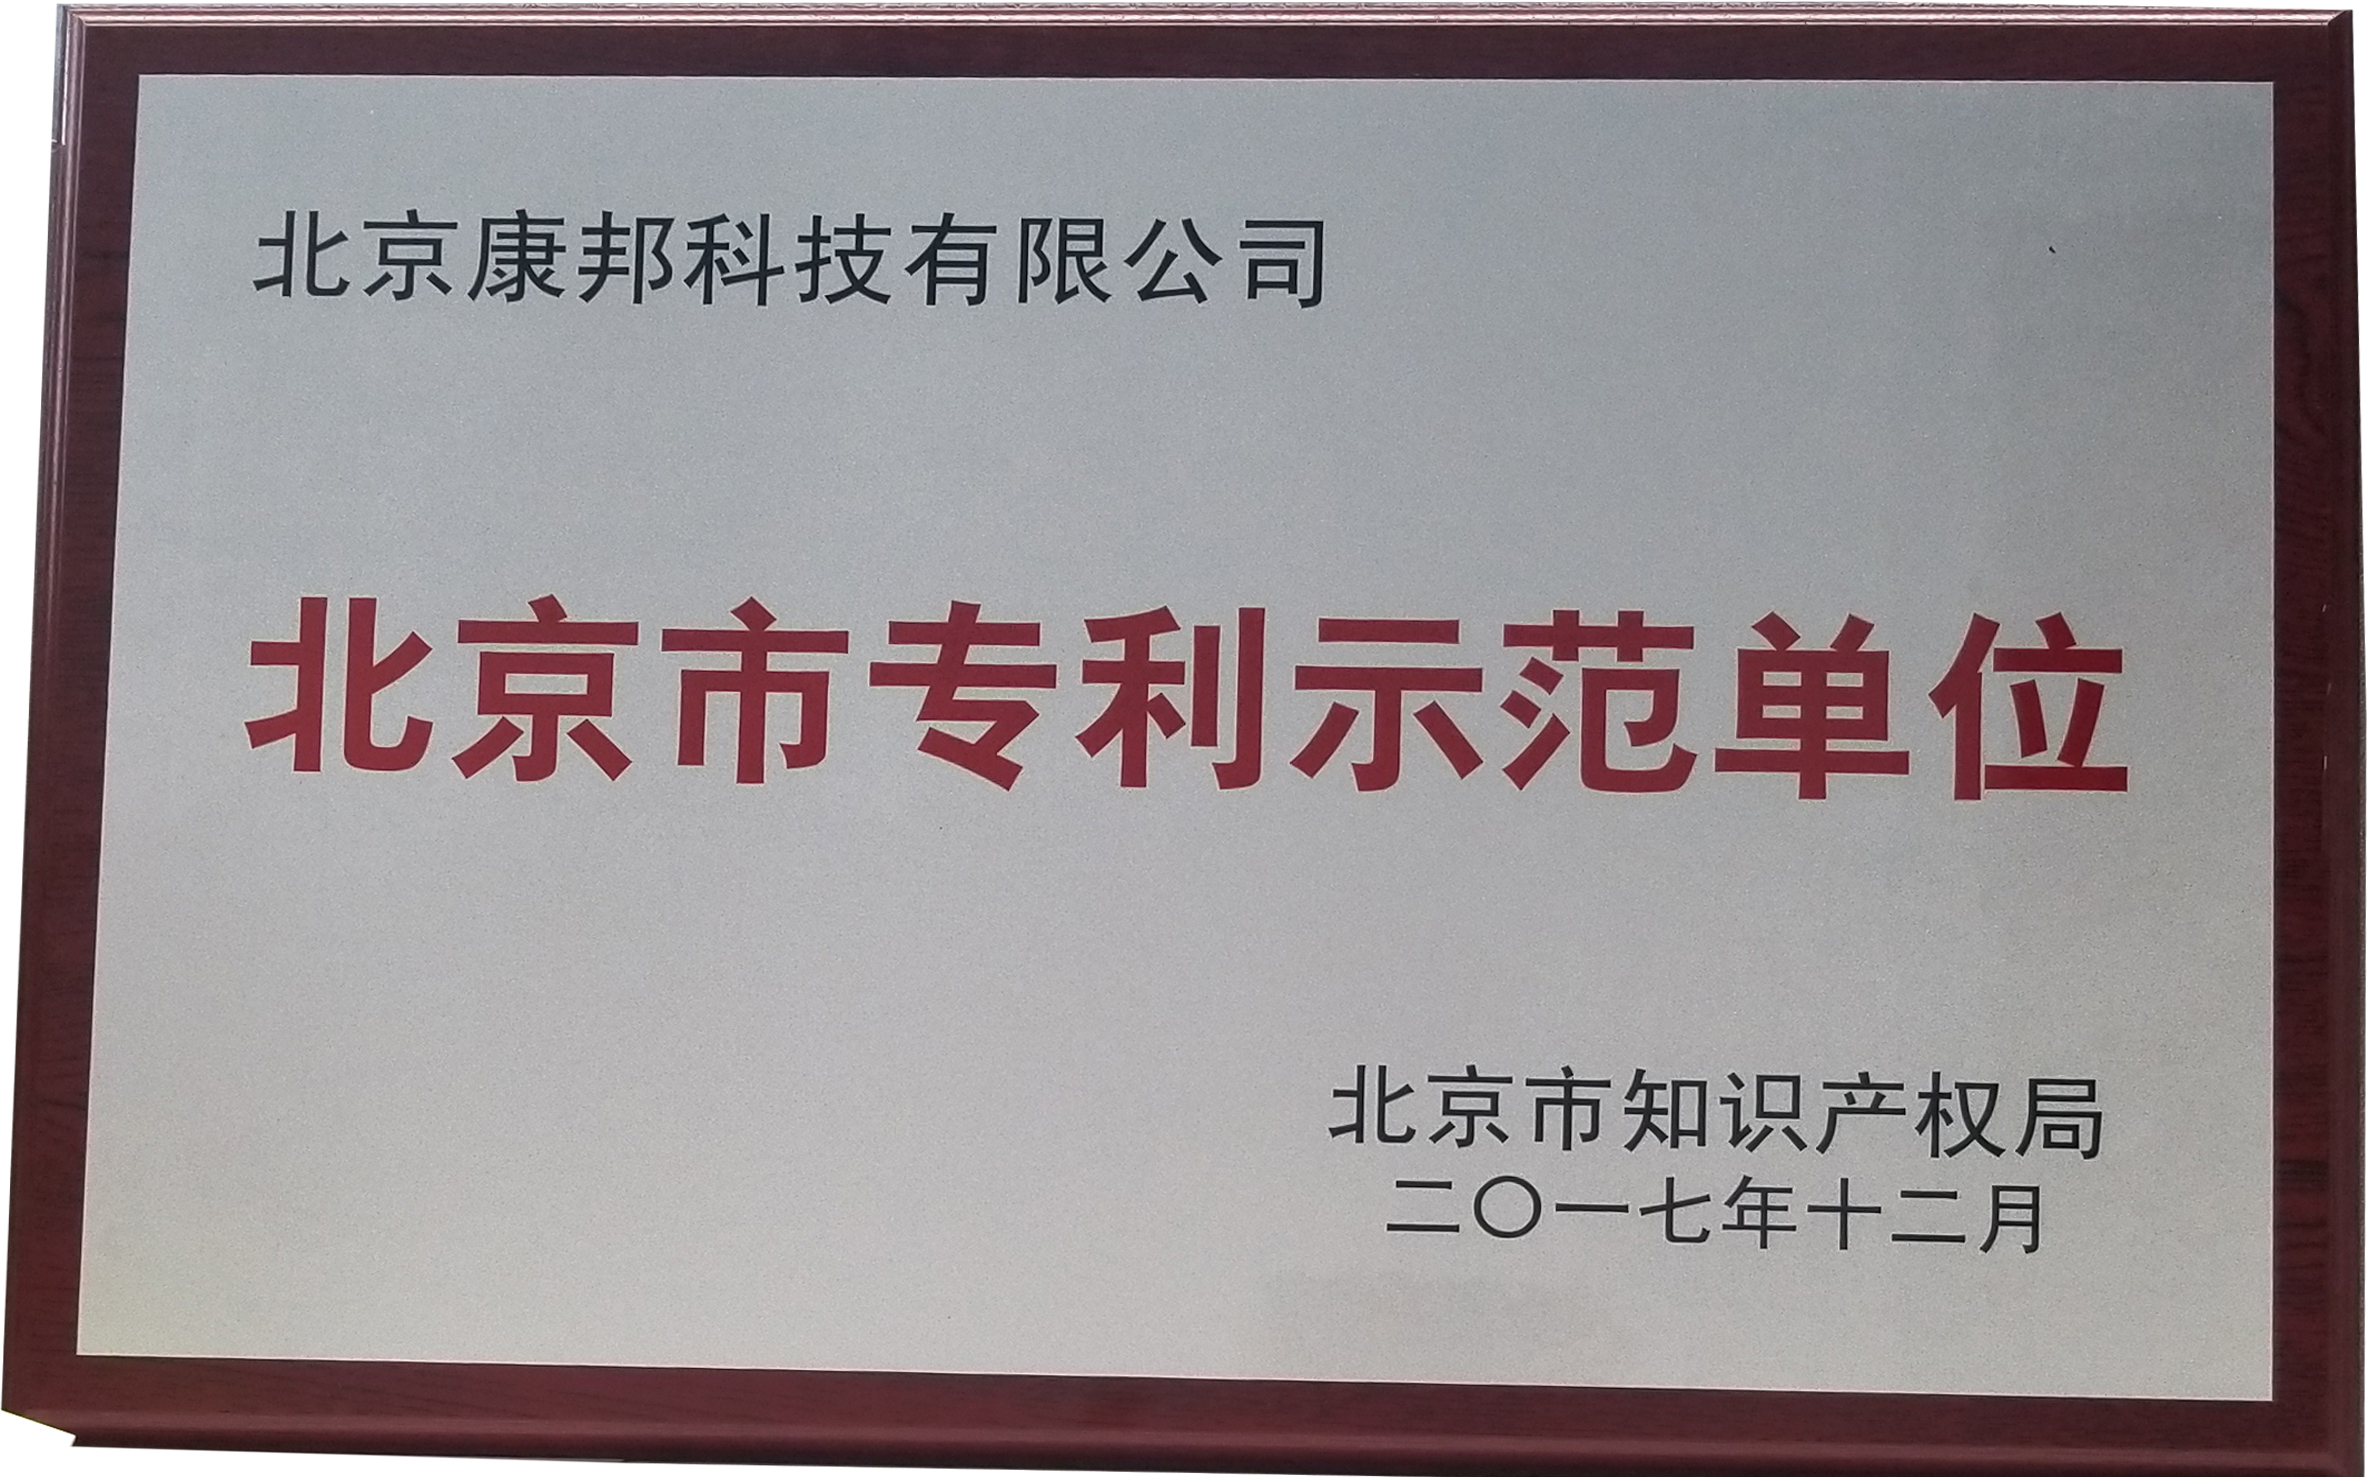 康邦科技获评“北京市专利示范单位”